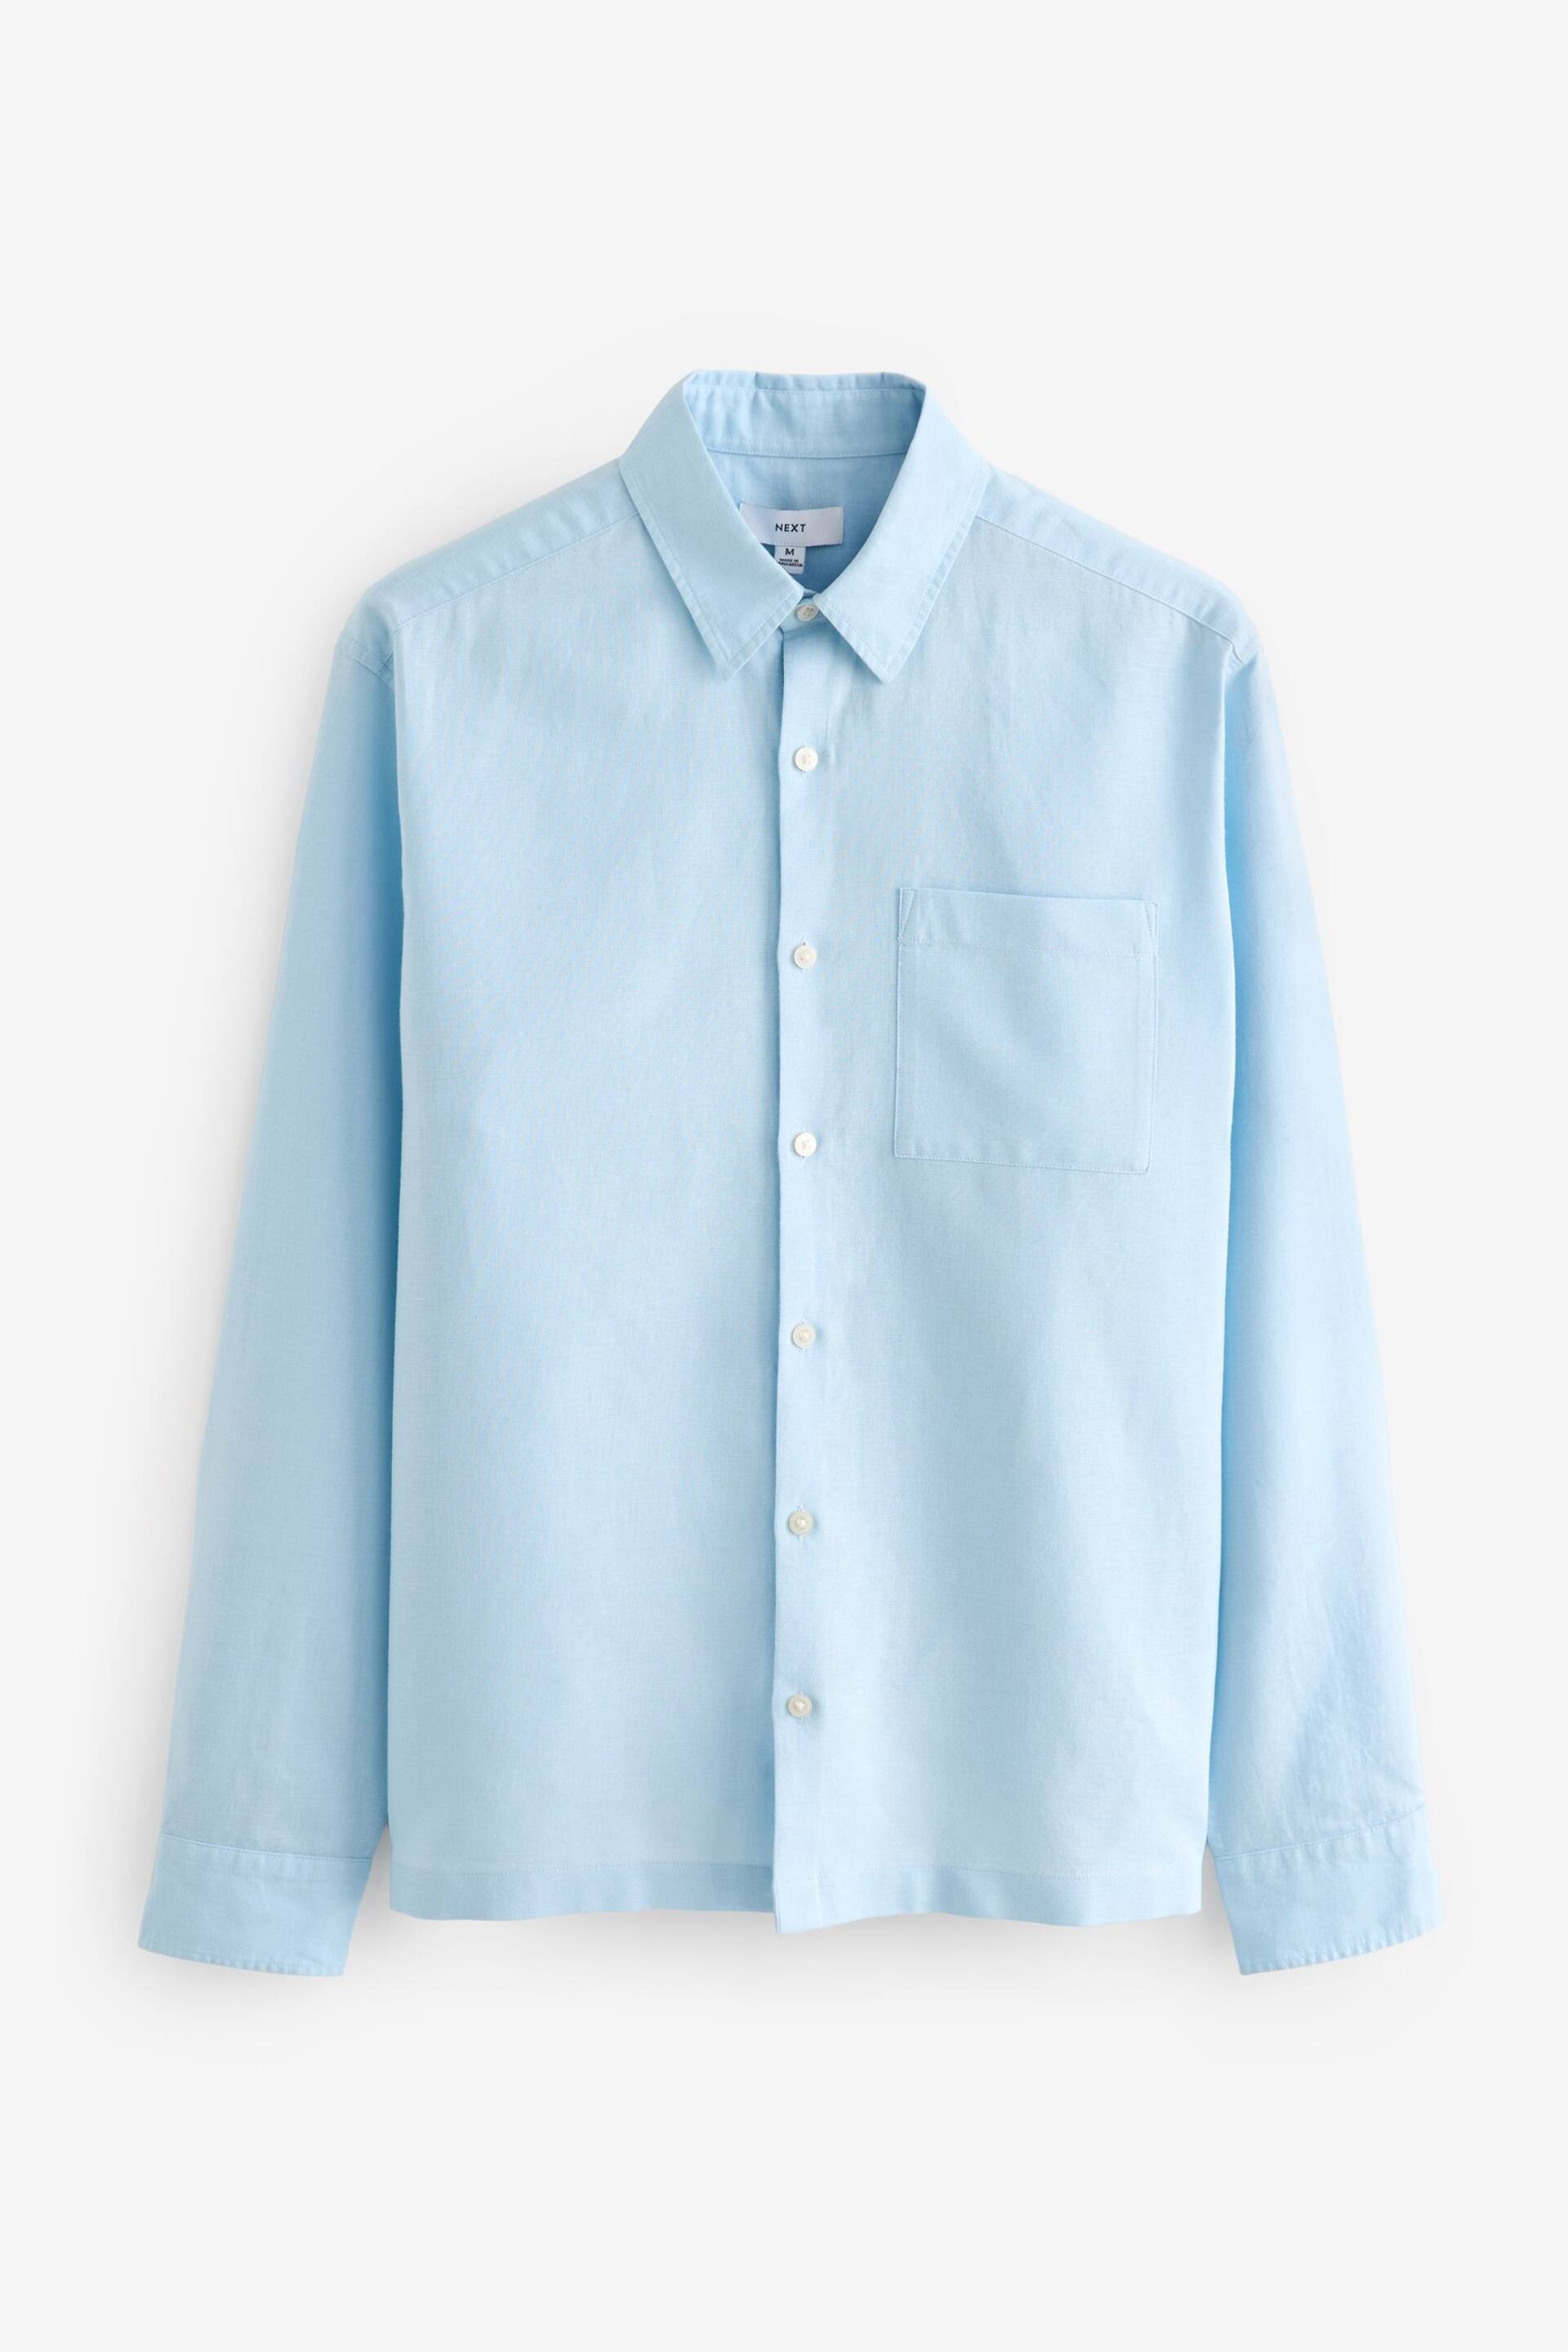 Light Blue Linen Blend Long Sleeve Shirt - Image 6 of 8